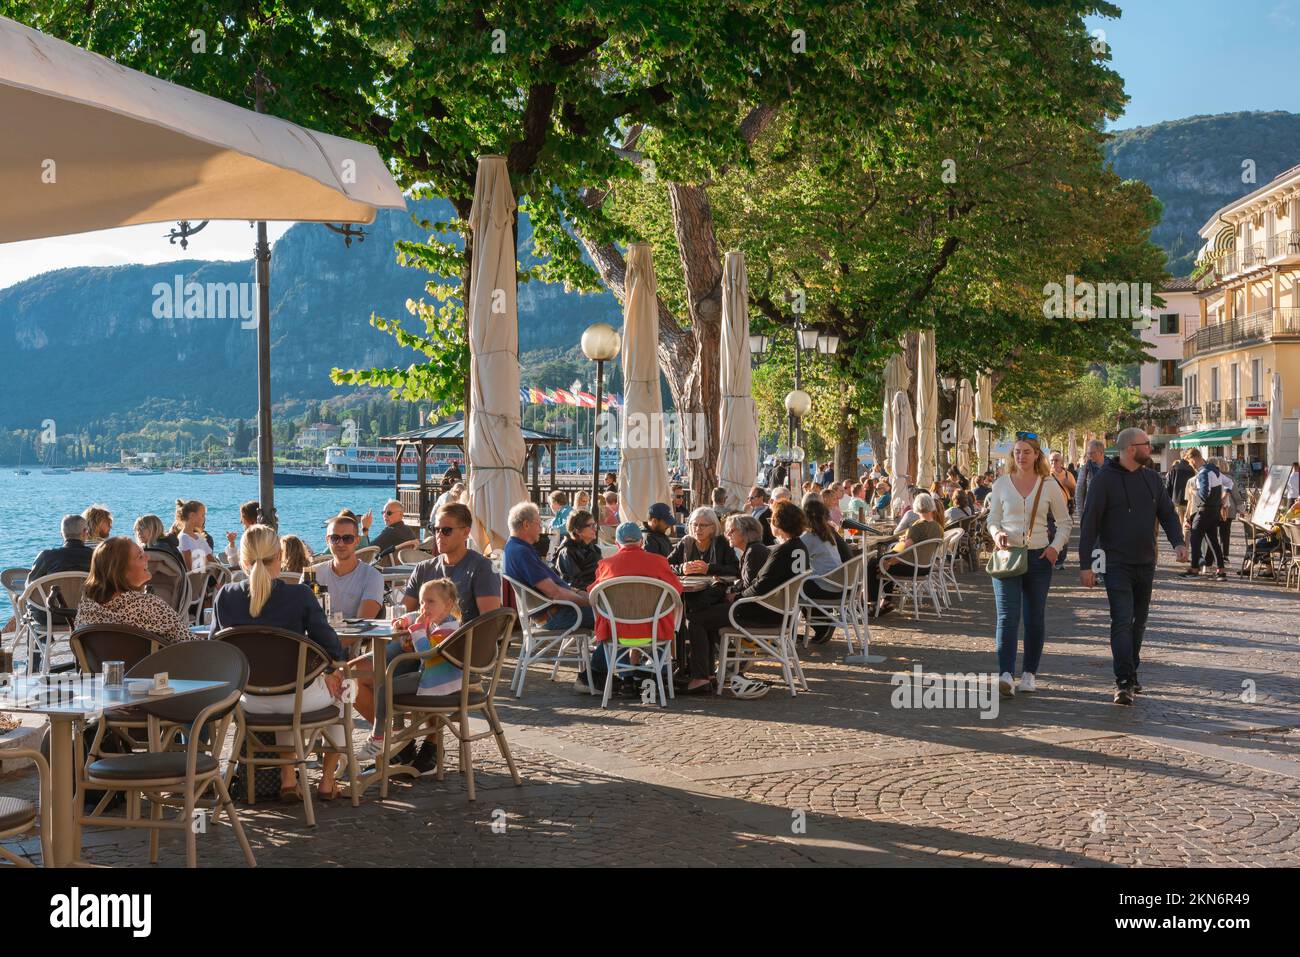 Lago de Garda Italia, vista de la gente que se relaja en las mesas de la cafetería situada a lo largo de la orilla del mar en la pintoresca zona de la ciudad antigua de Garda, Lago de Garda, Véneto Foto de stock